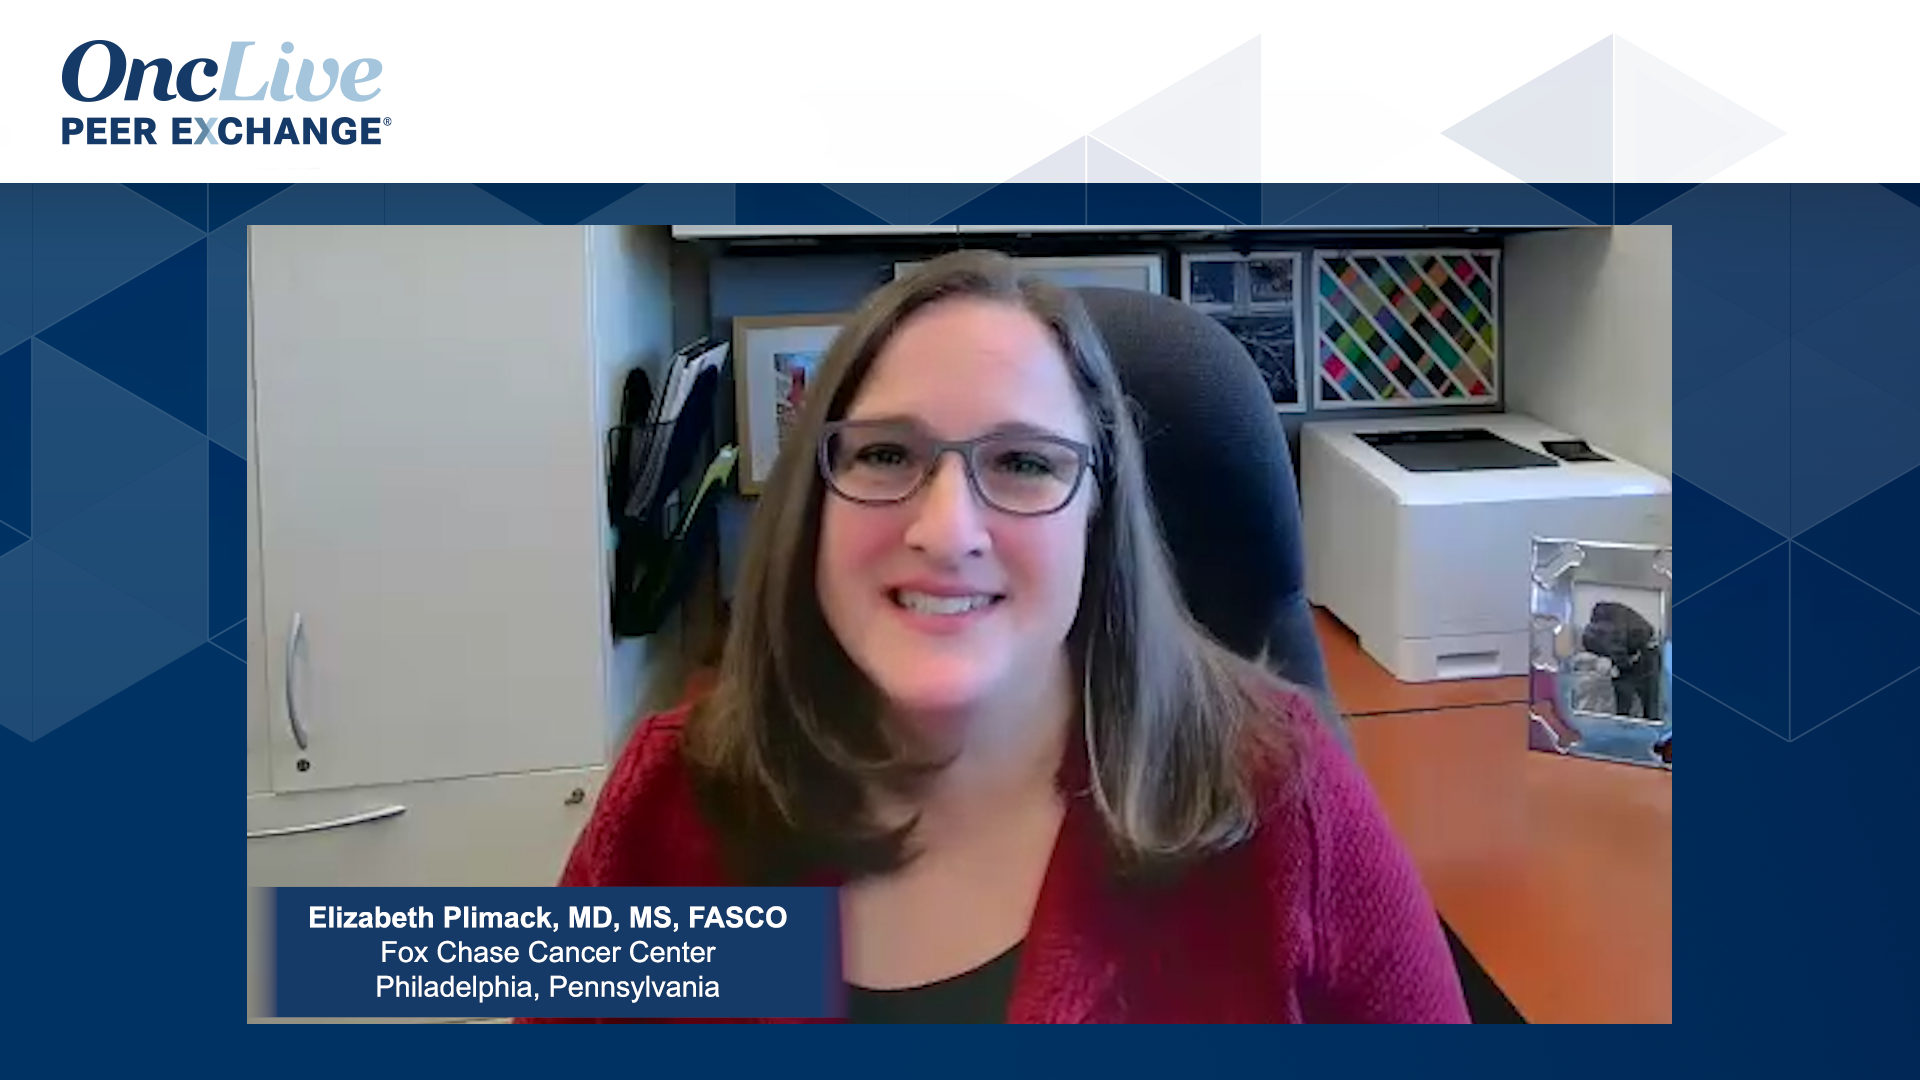 Elizabeth Plimack, MD, MS, FASCO, an expert on bladder cancer